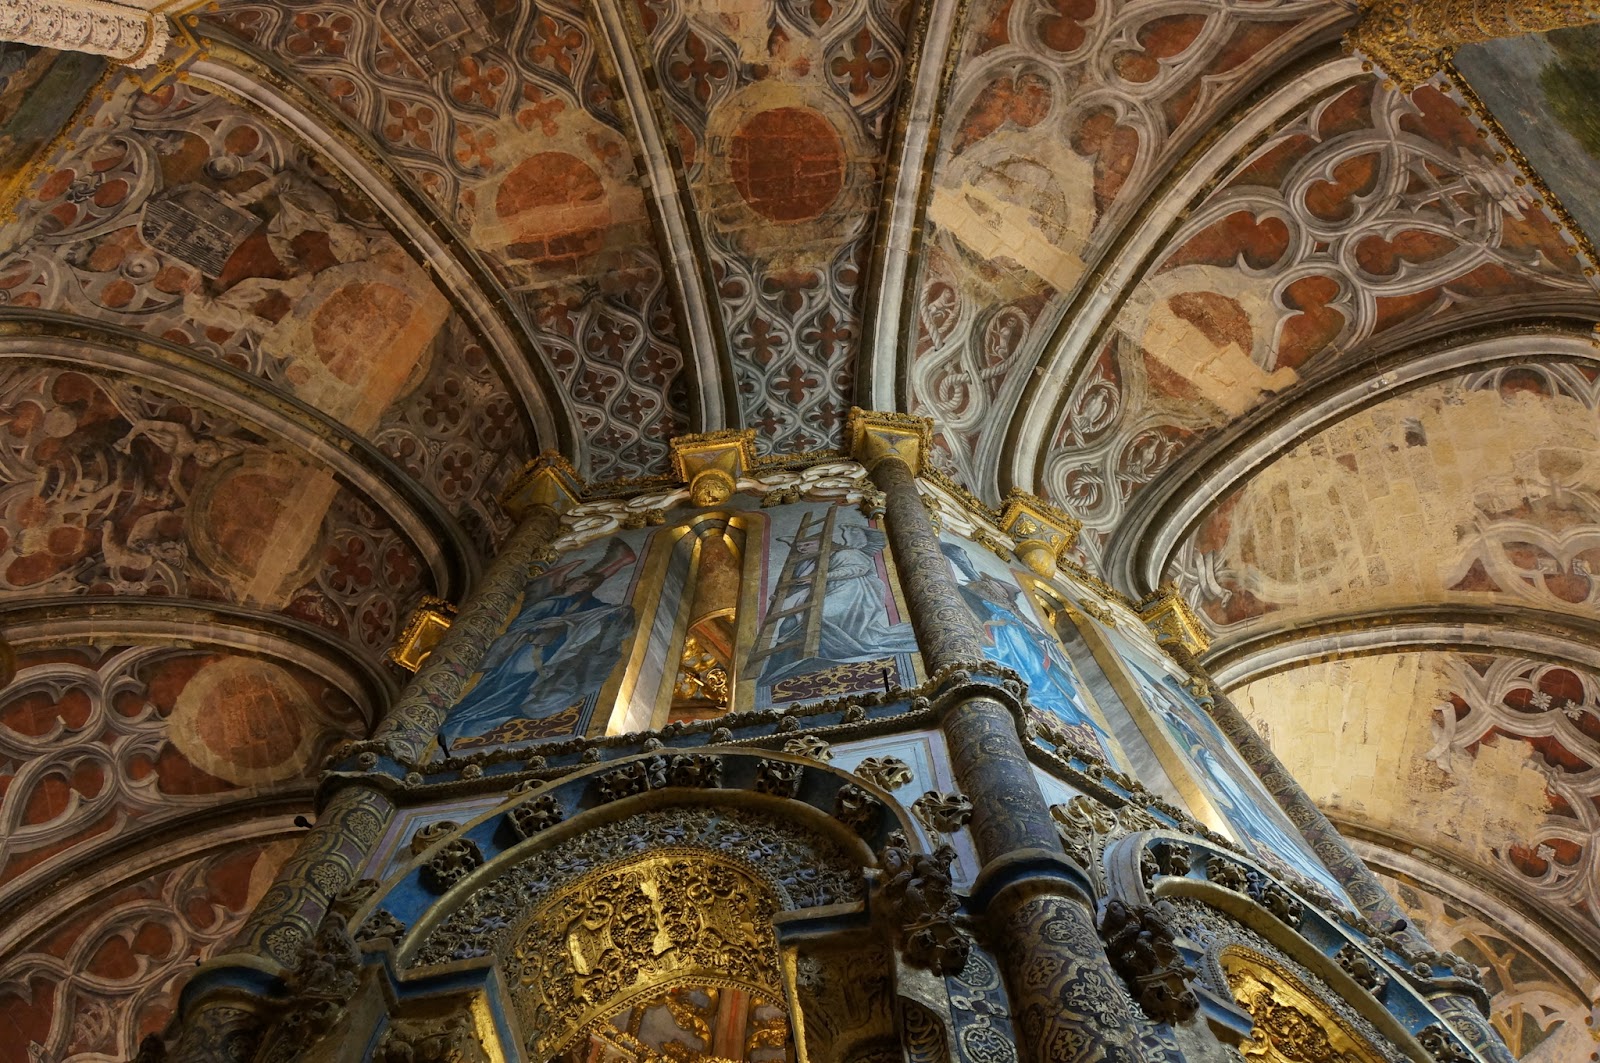 Charola - Convento do Cristo - Tomar - Portugal